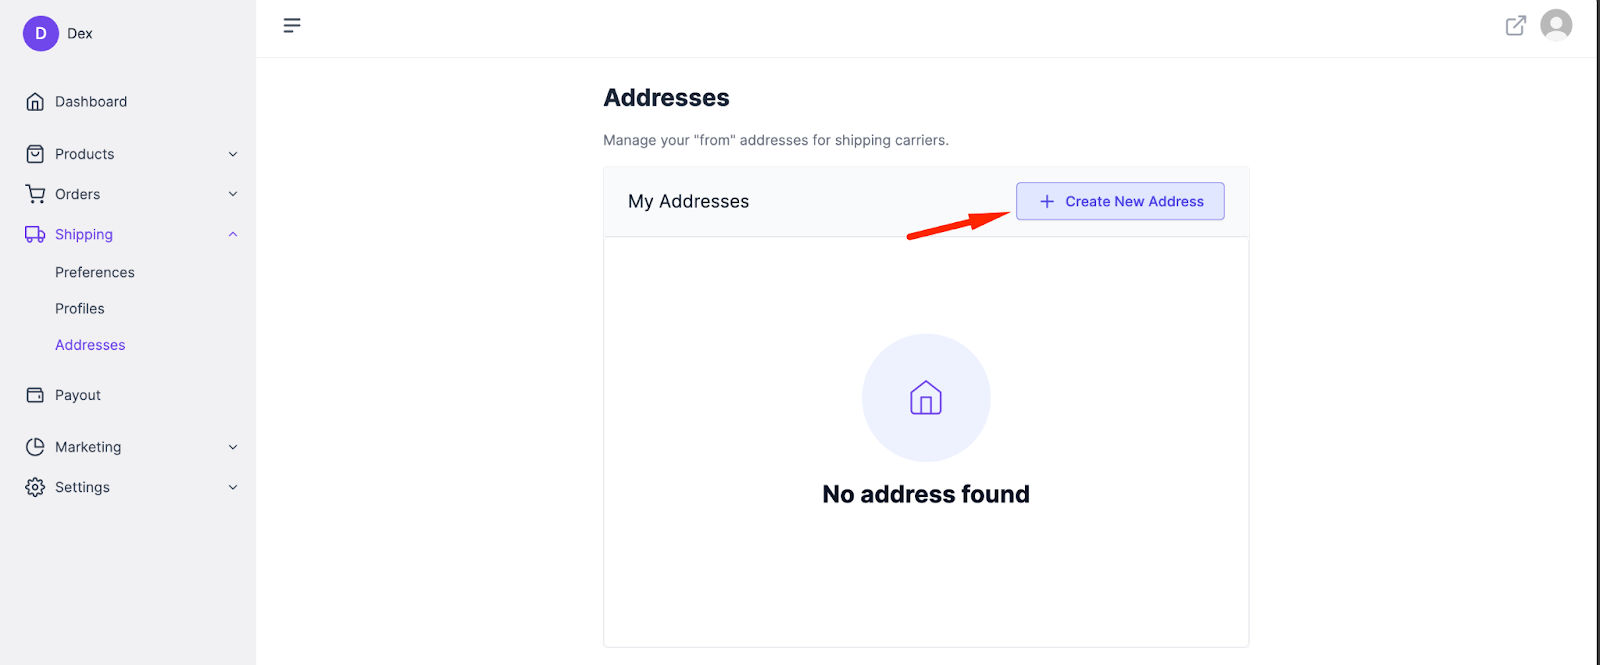 A screenshot to add new address button